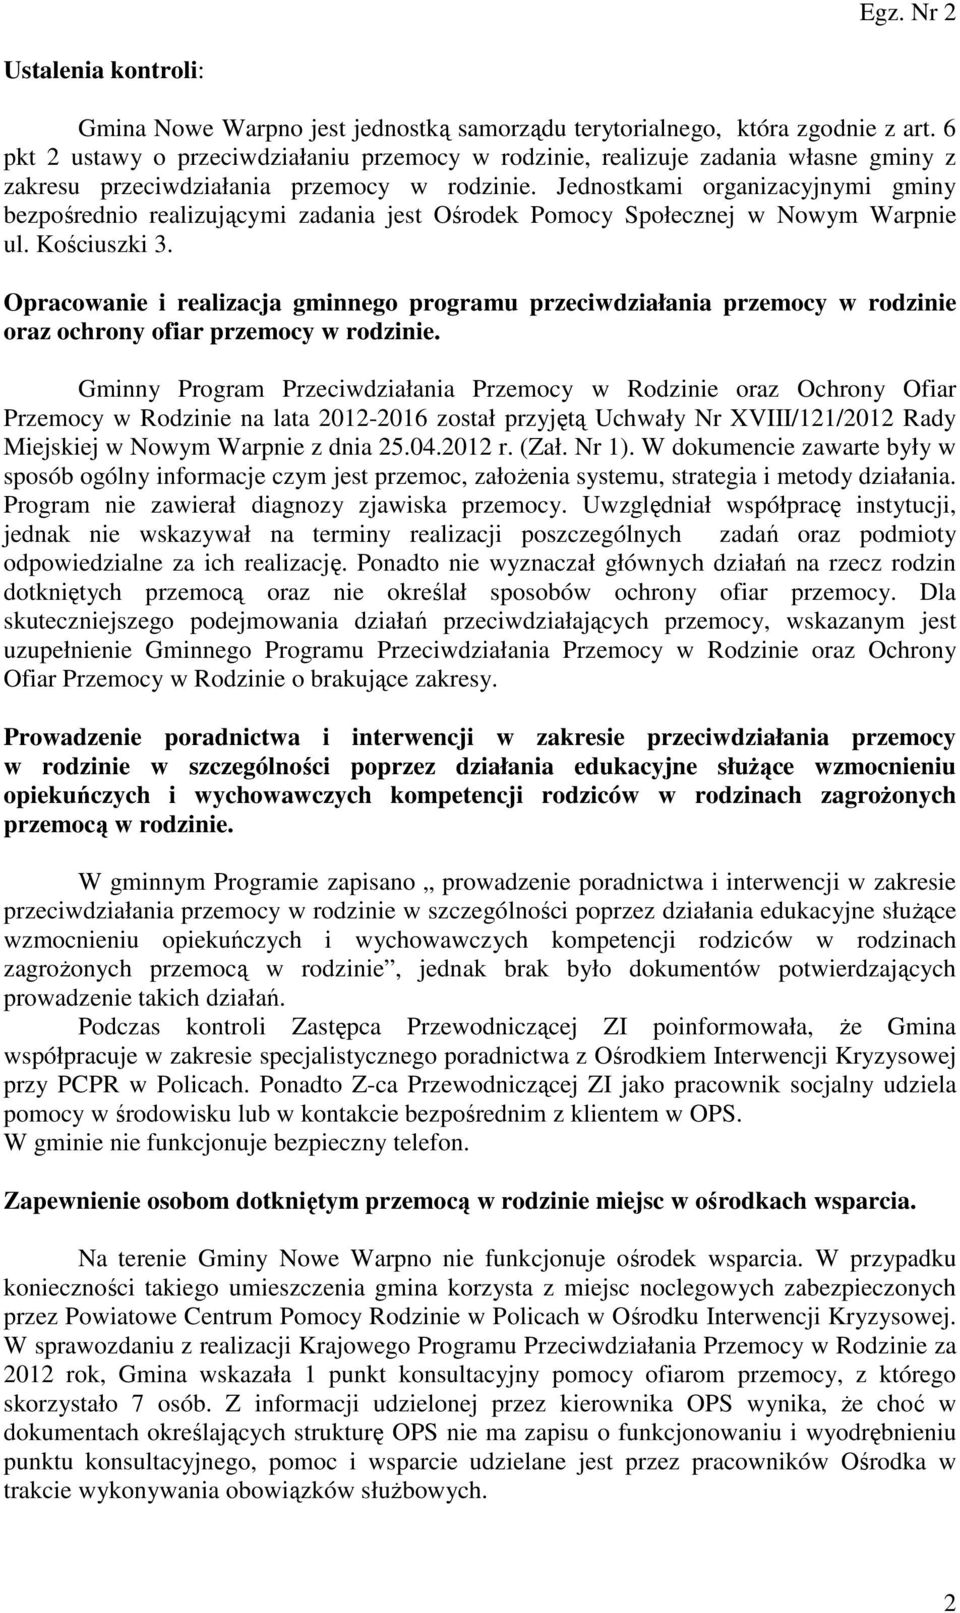 Jednostkami organizacyjnymi gminy bezpośrednio realizującymi zadania jest Ośrodek Pomocy Społecznej w Nowym Warpnie ul. Kościuszki 3.